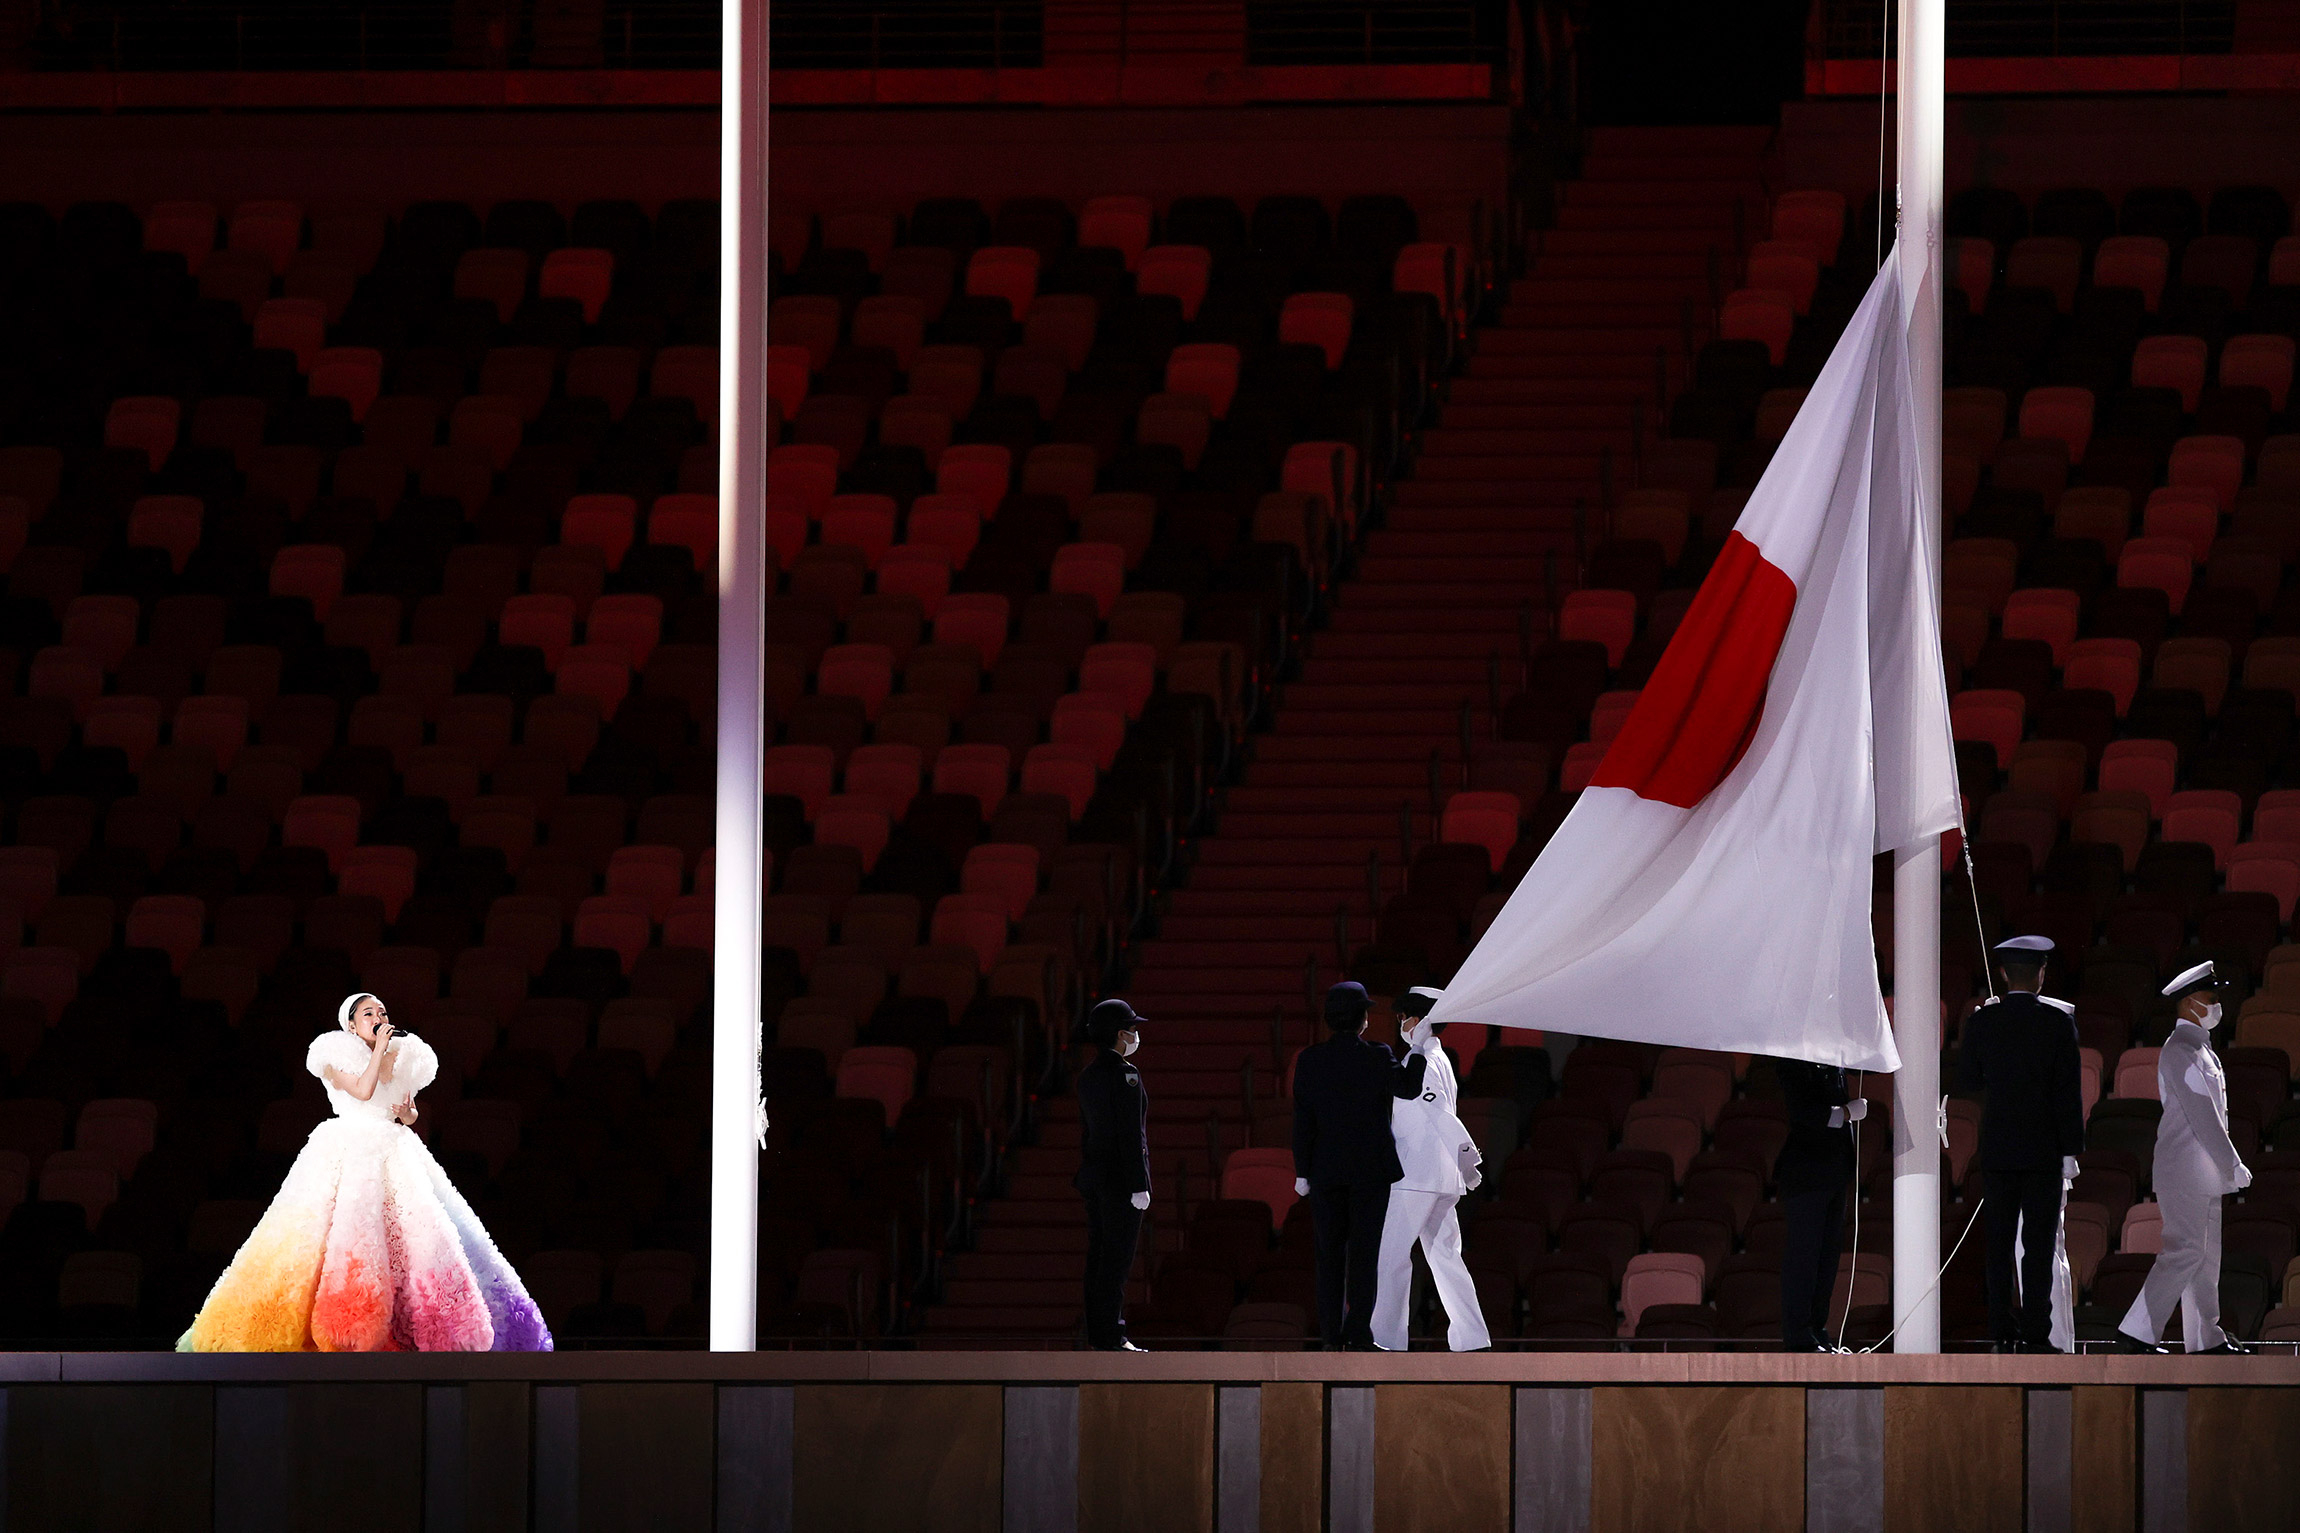 Первым над стадионом подняли флаг Японии, как страны&nbsp;&mdash; хозяйки Игр